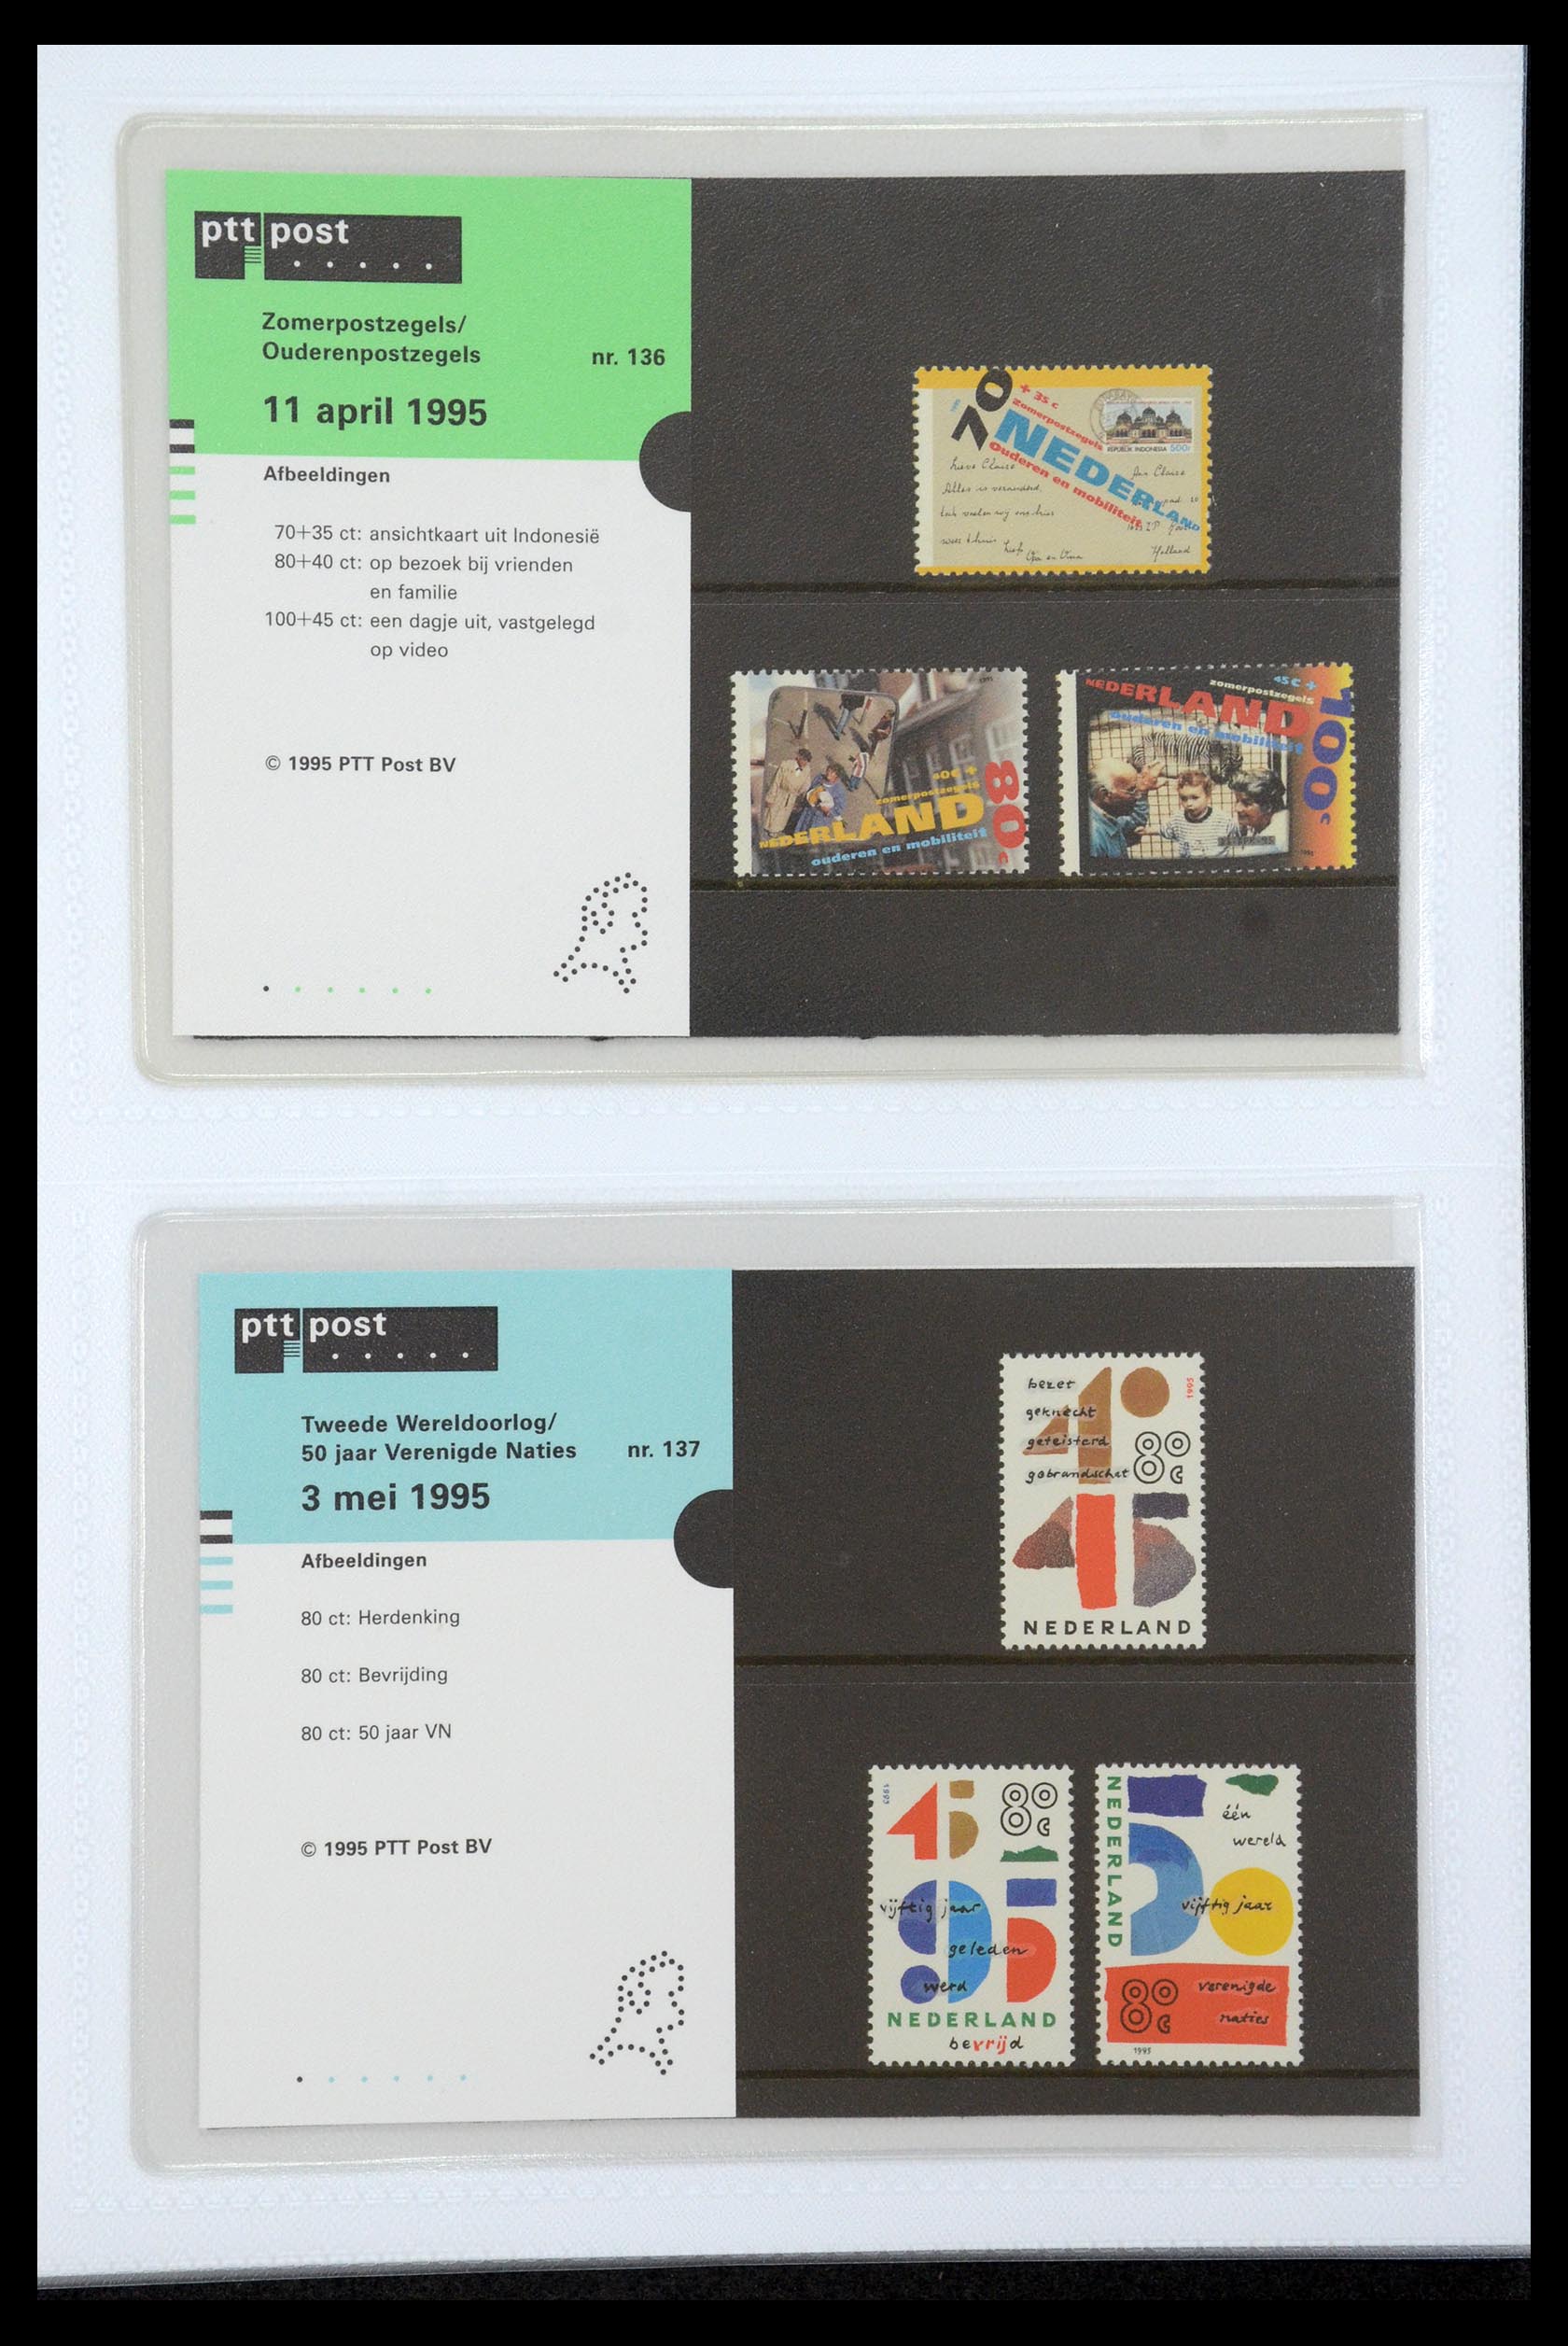 35947 071 - Stamp Collection 35947 Netherlands PTT presentation packs 1982-2019!